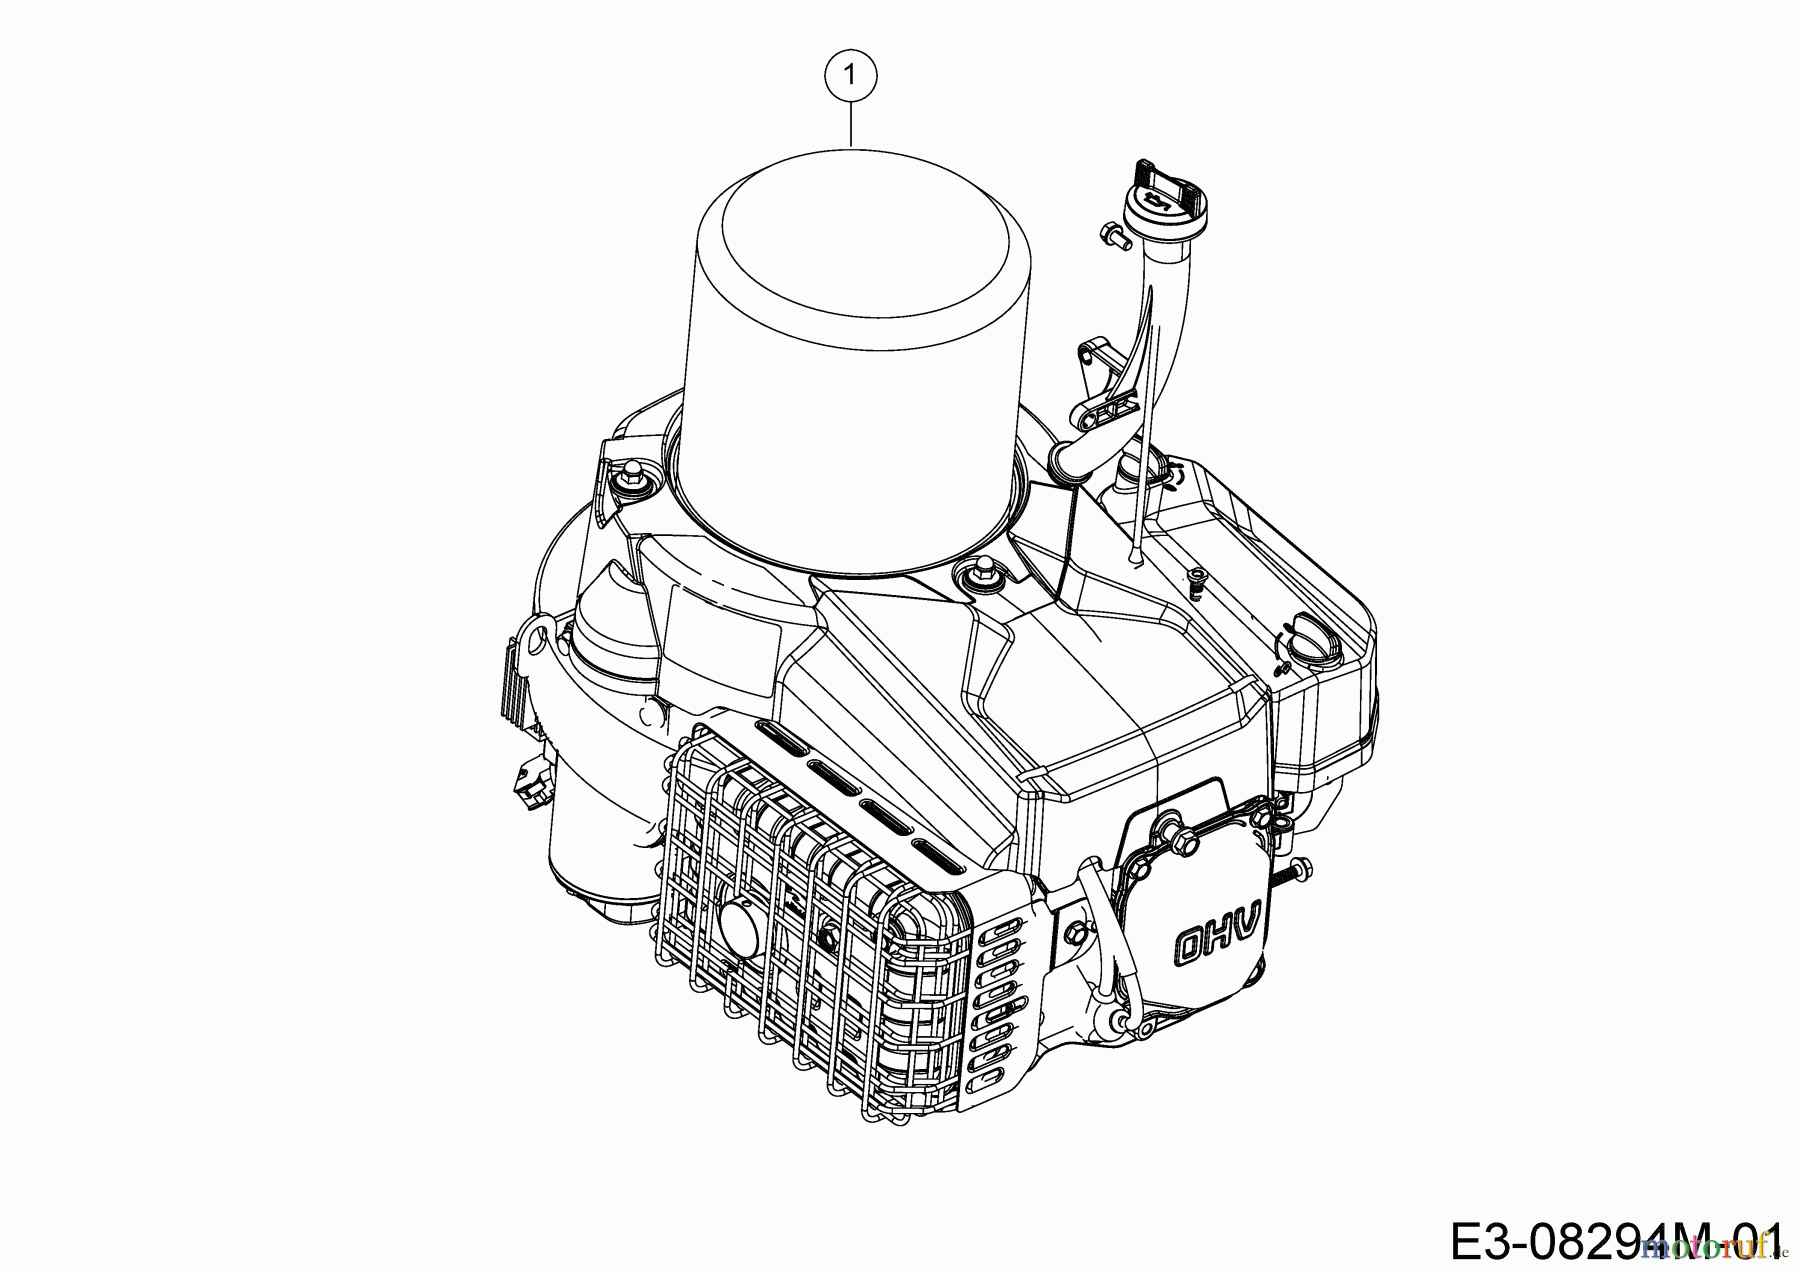  Bestgreen Lawn tractors BG 76 SM 13C726JD655  (2021) Engine